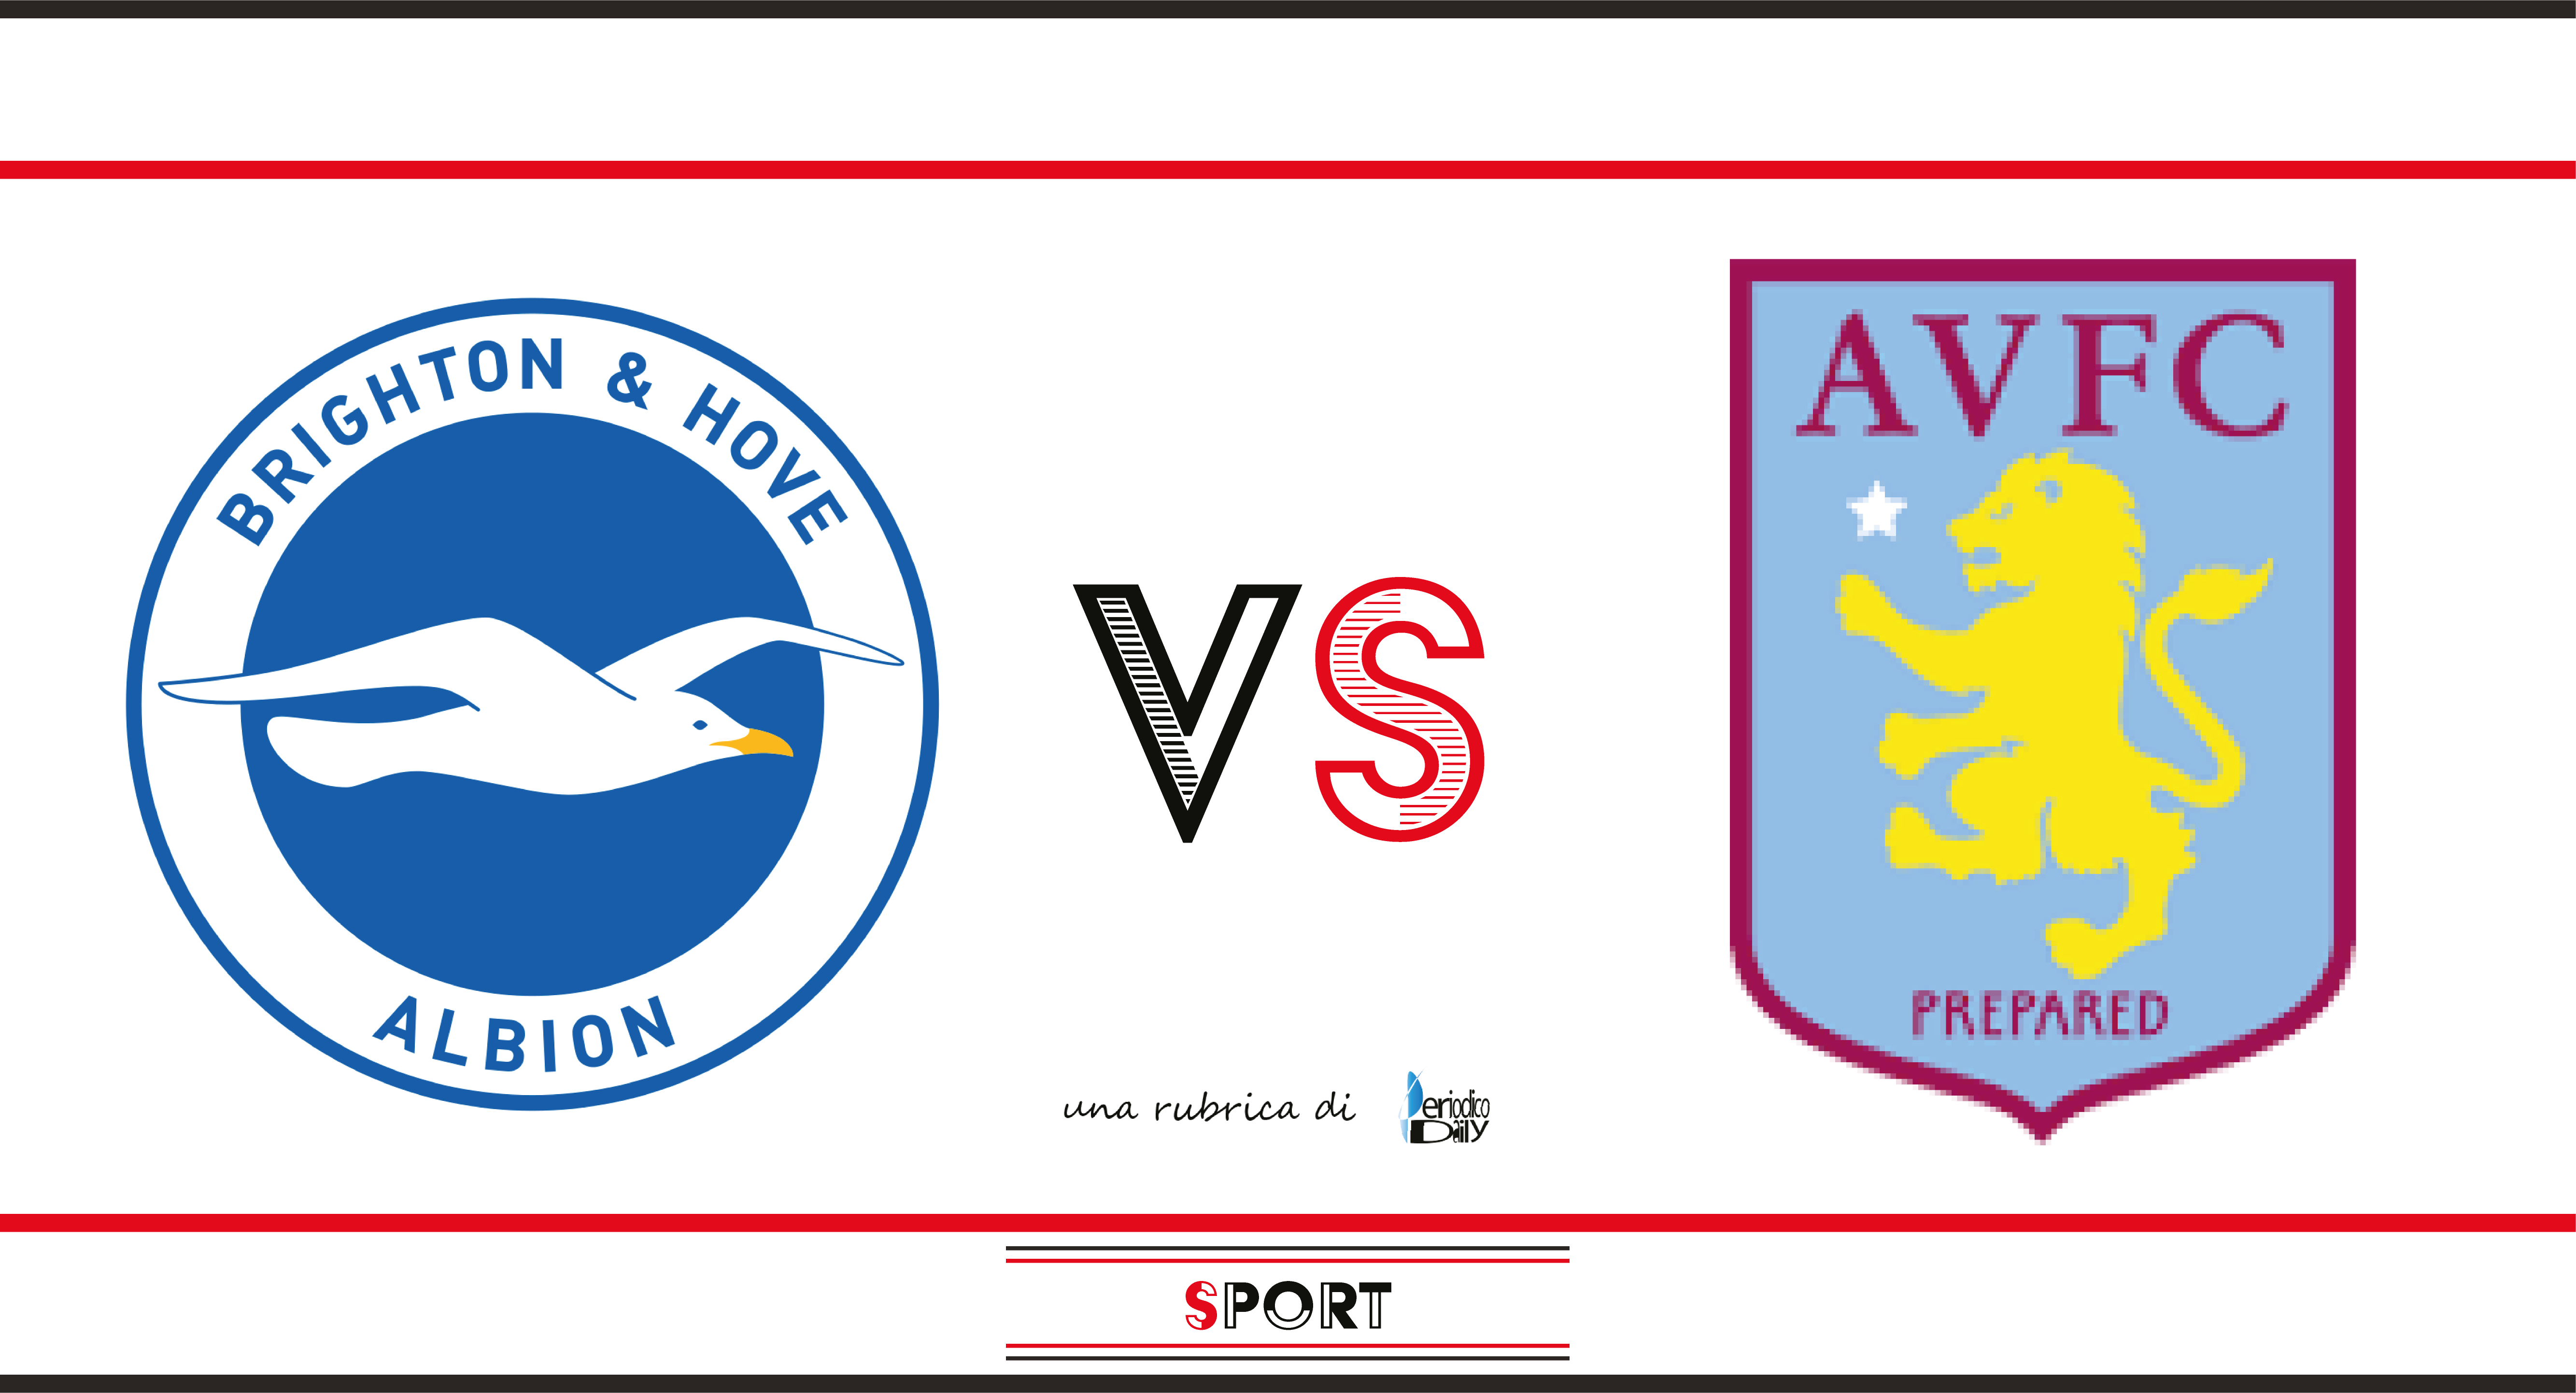 Brighton & Hove Albion vs Aston Villa – probabili formazioni